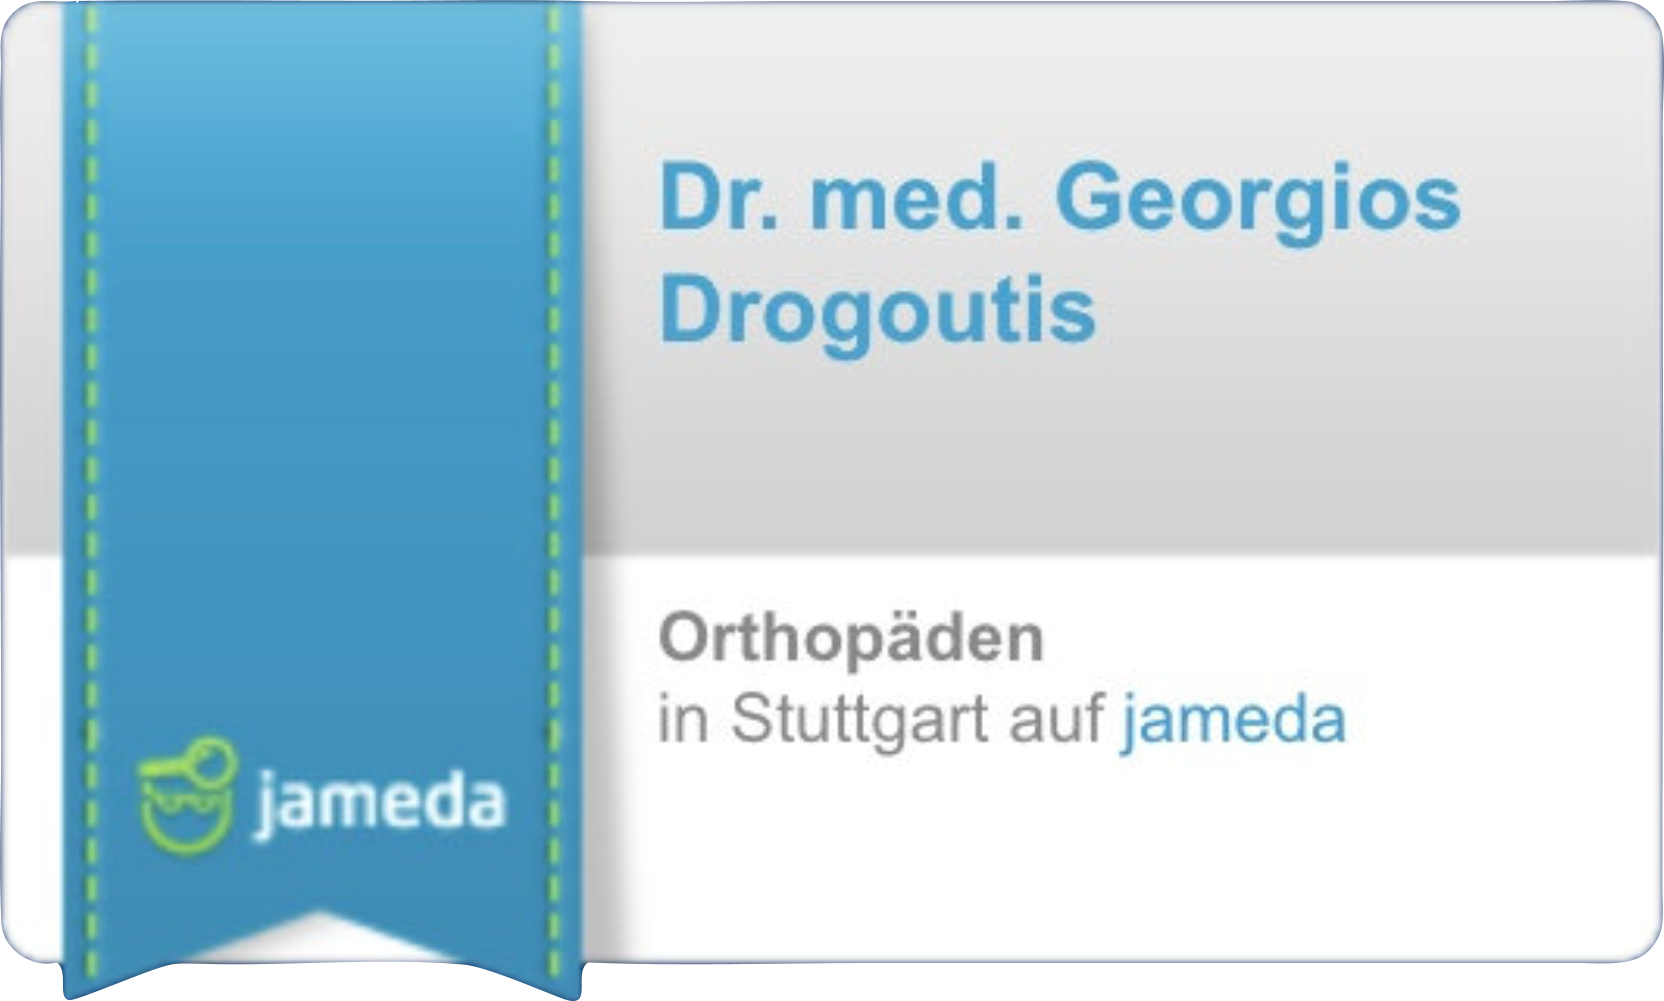 Jameda Top Orthopäden - Dr. Drogoutis Rotebühlplatz Stuttgart